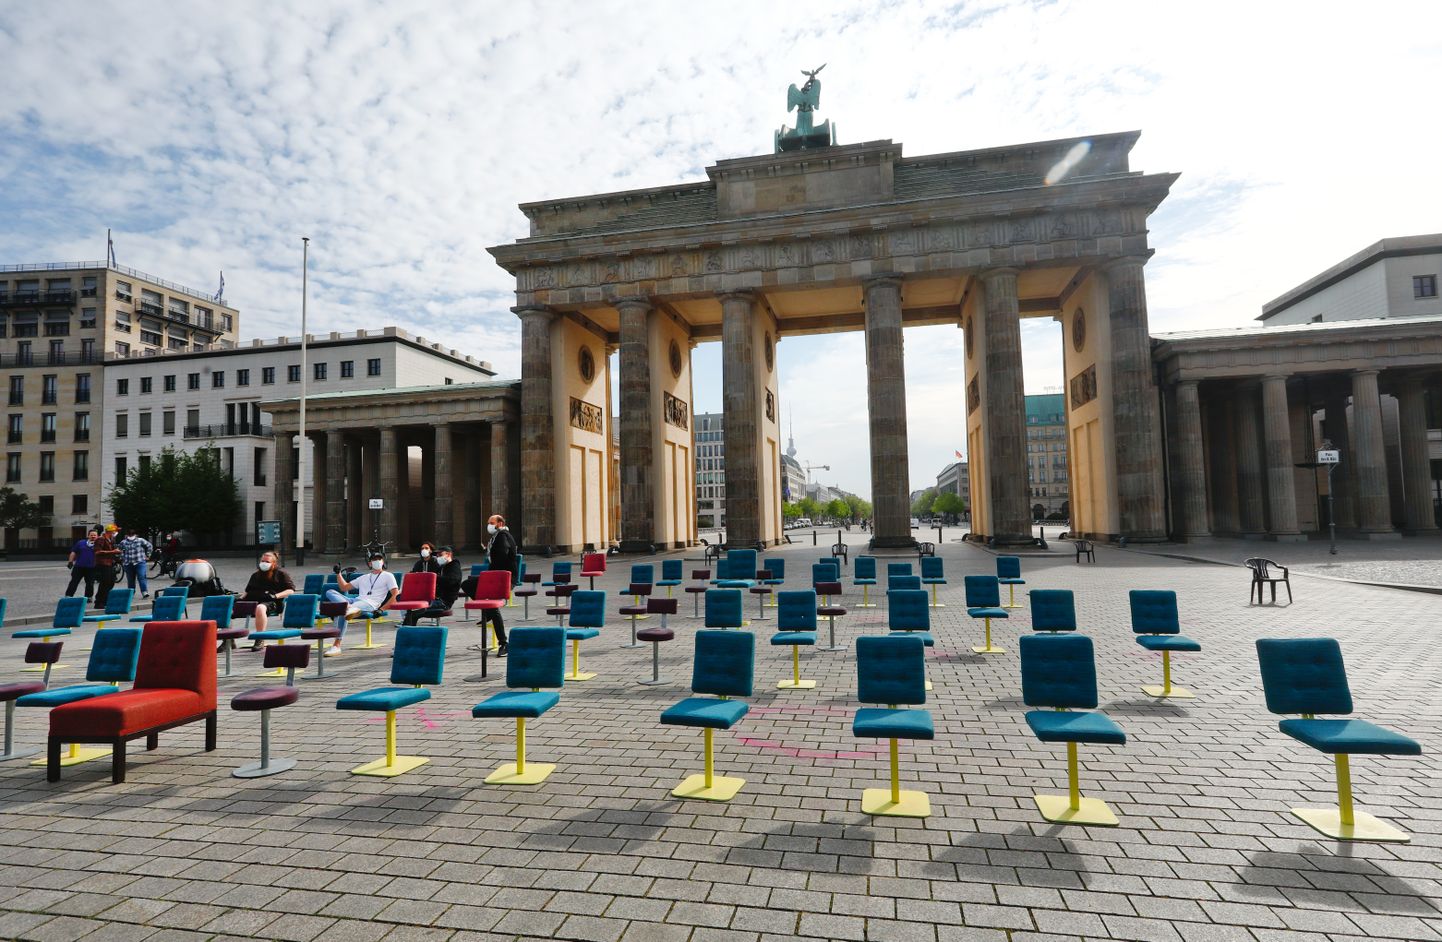 Tühjad toolid Brandenburgi väravate ees.